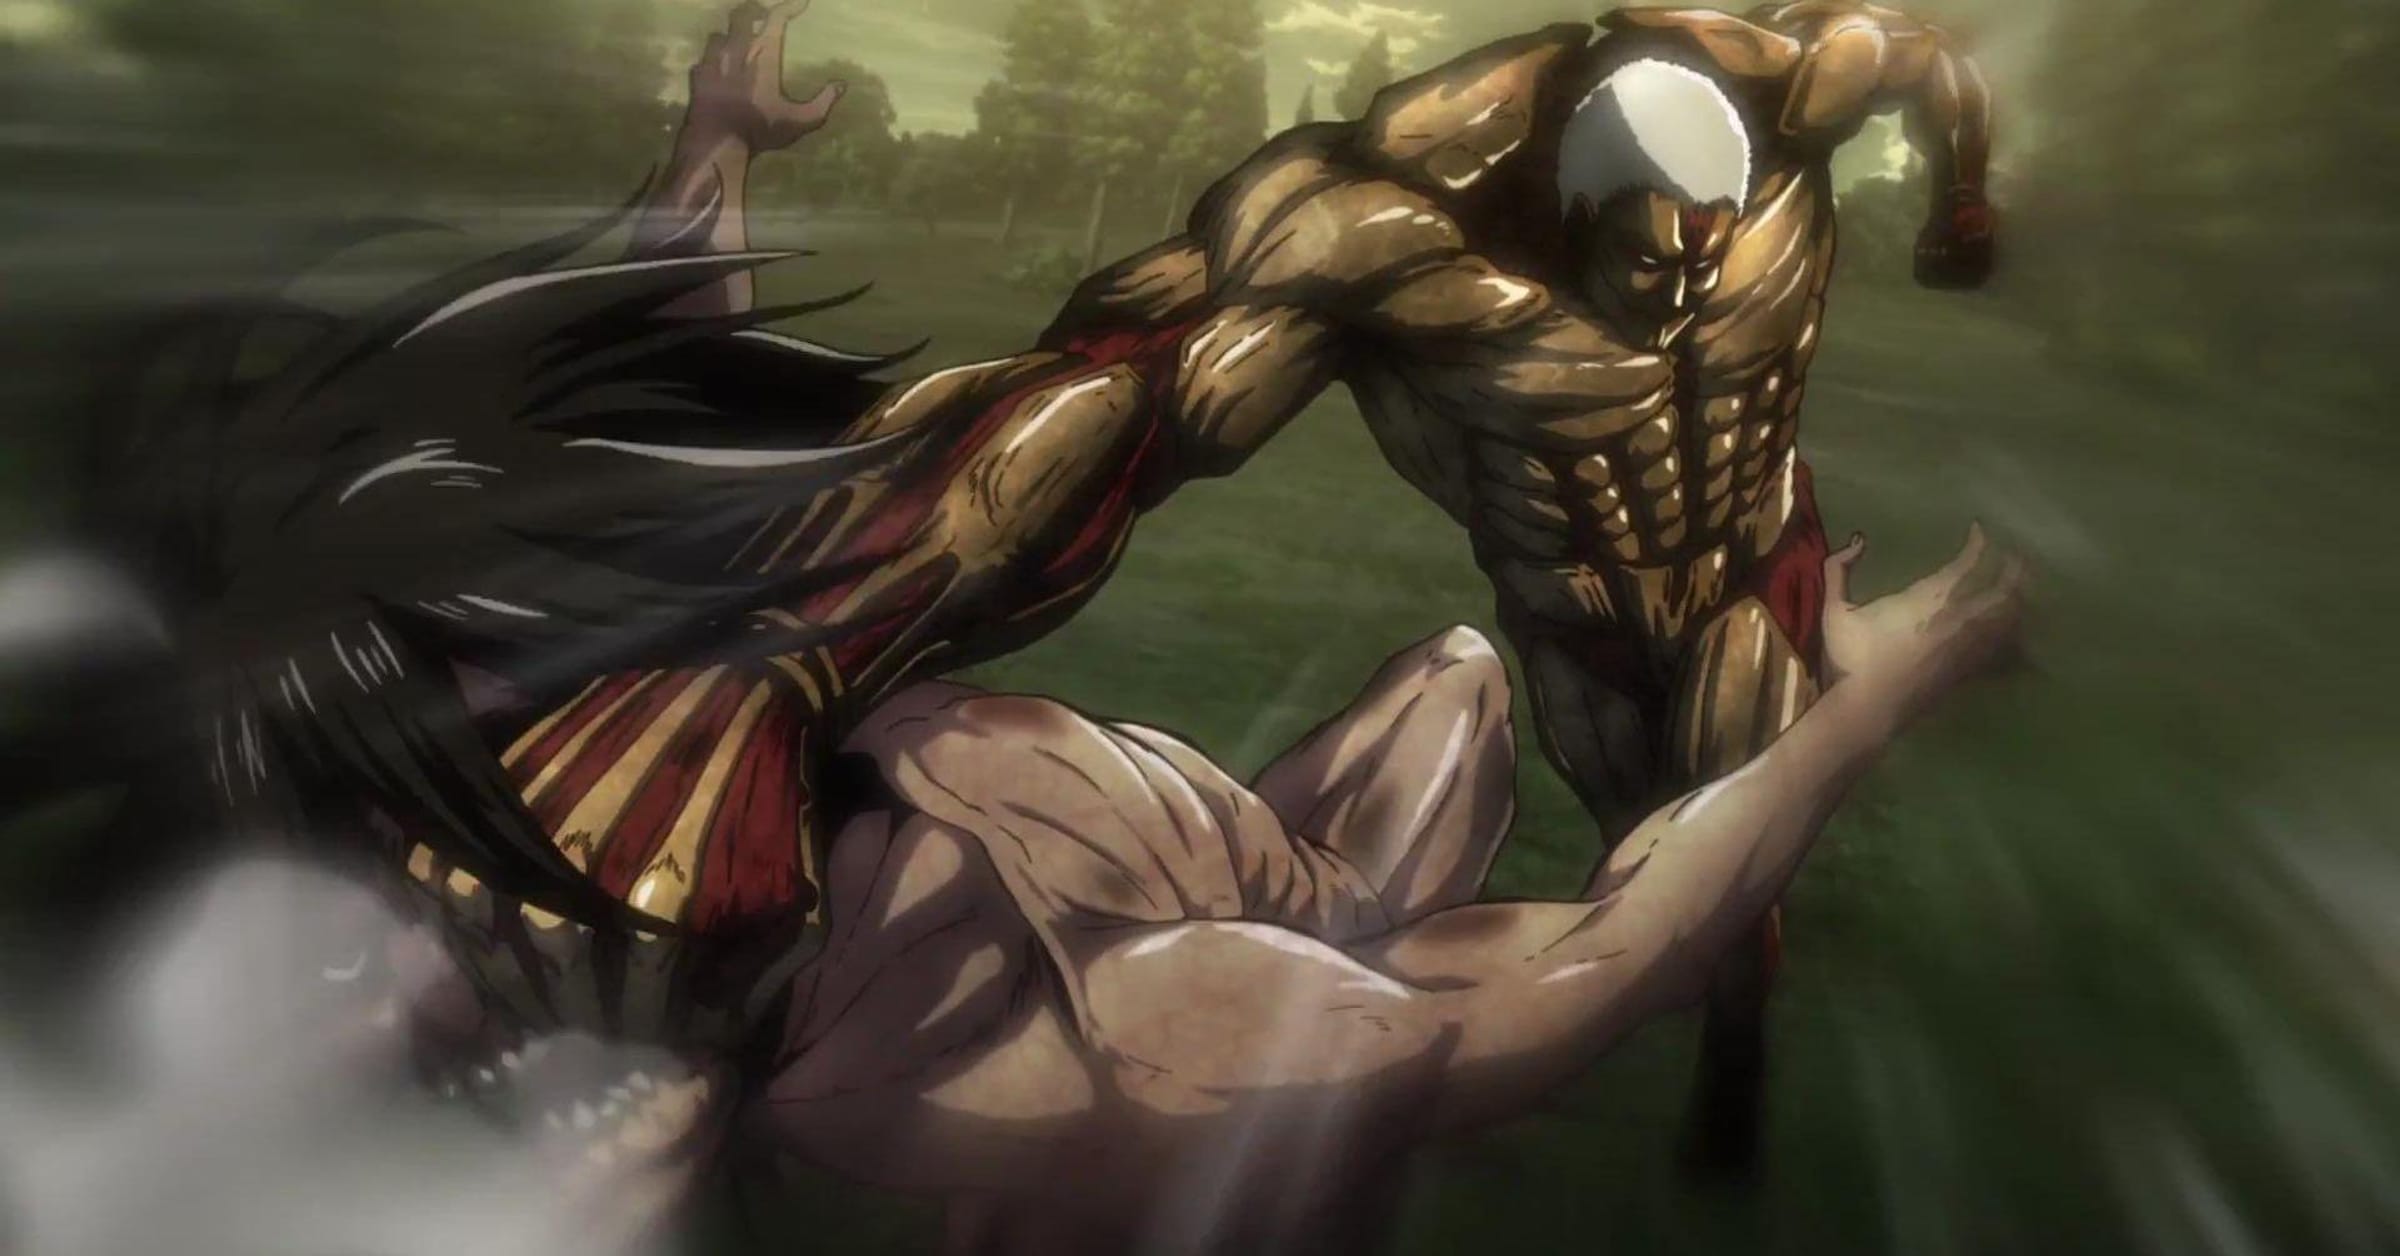 Attack on Titan Season 4 Returns With Eren and Reiner's Bloodiest Brawl Yet